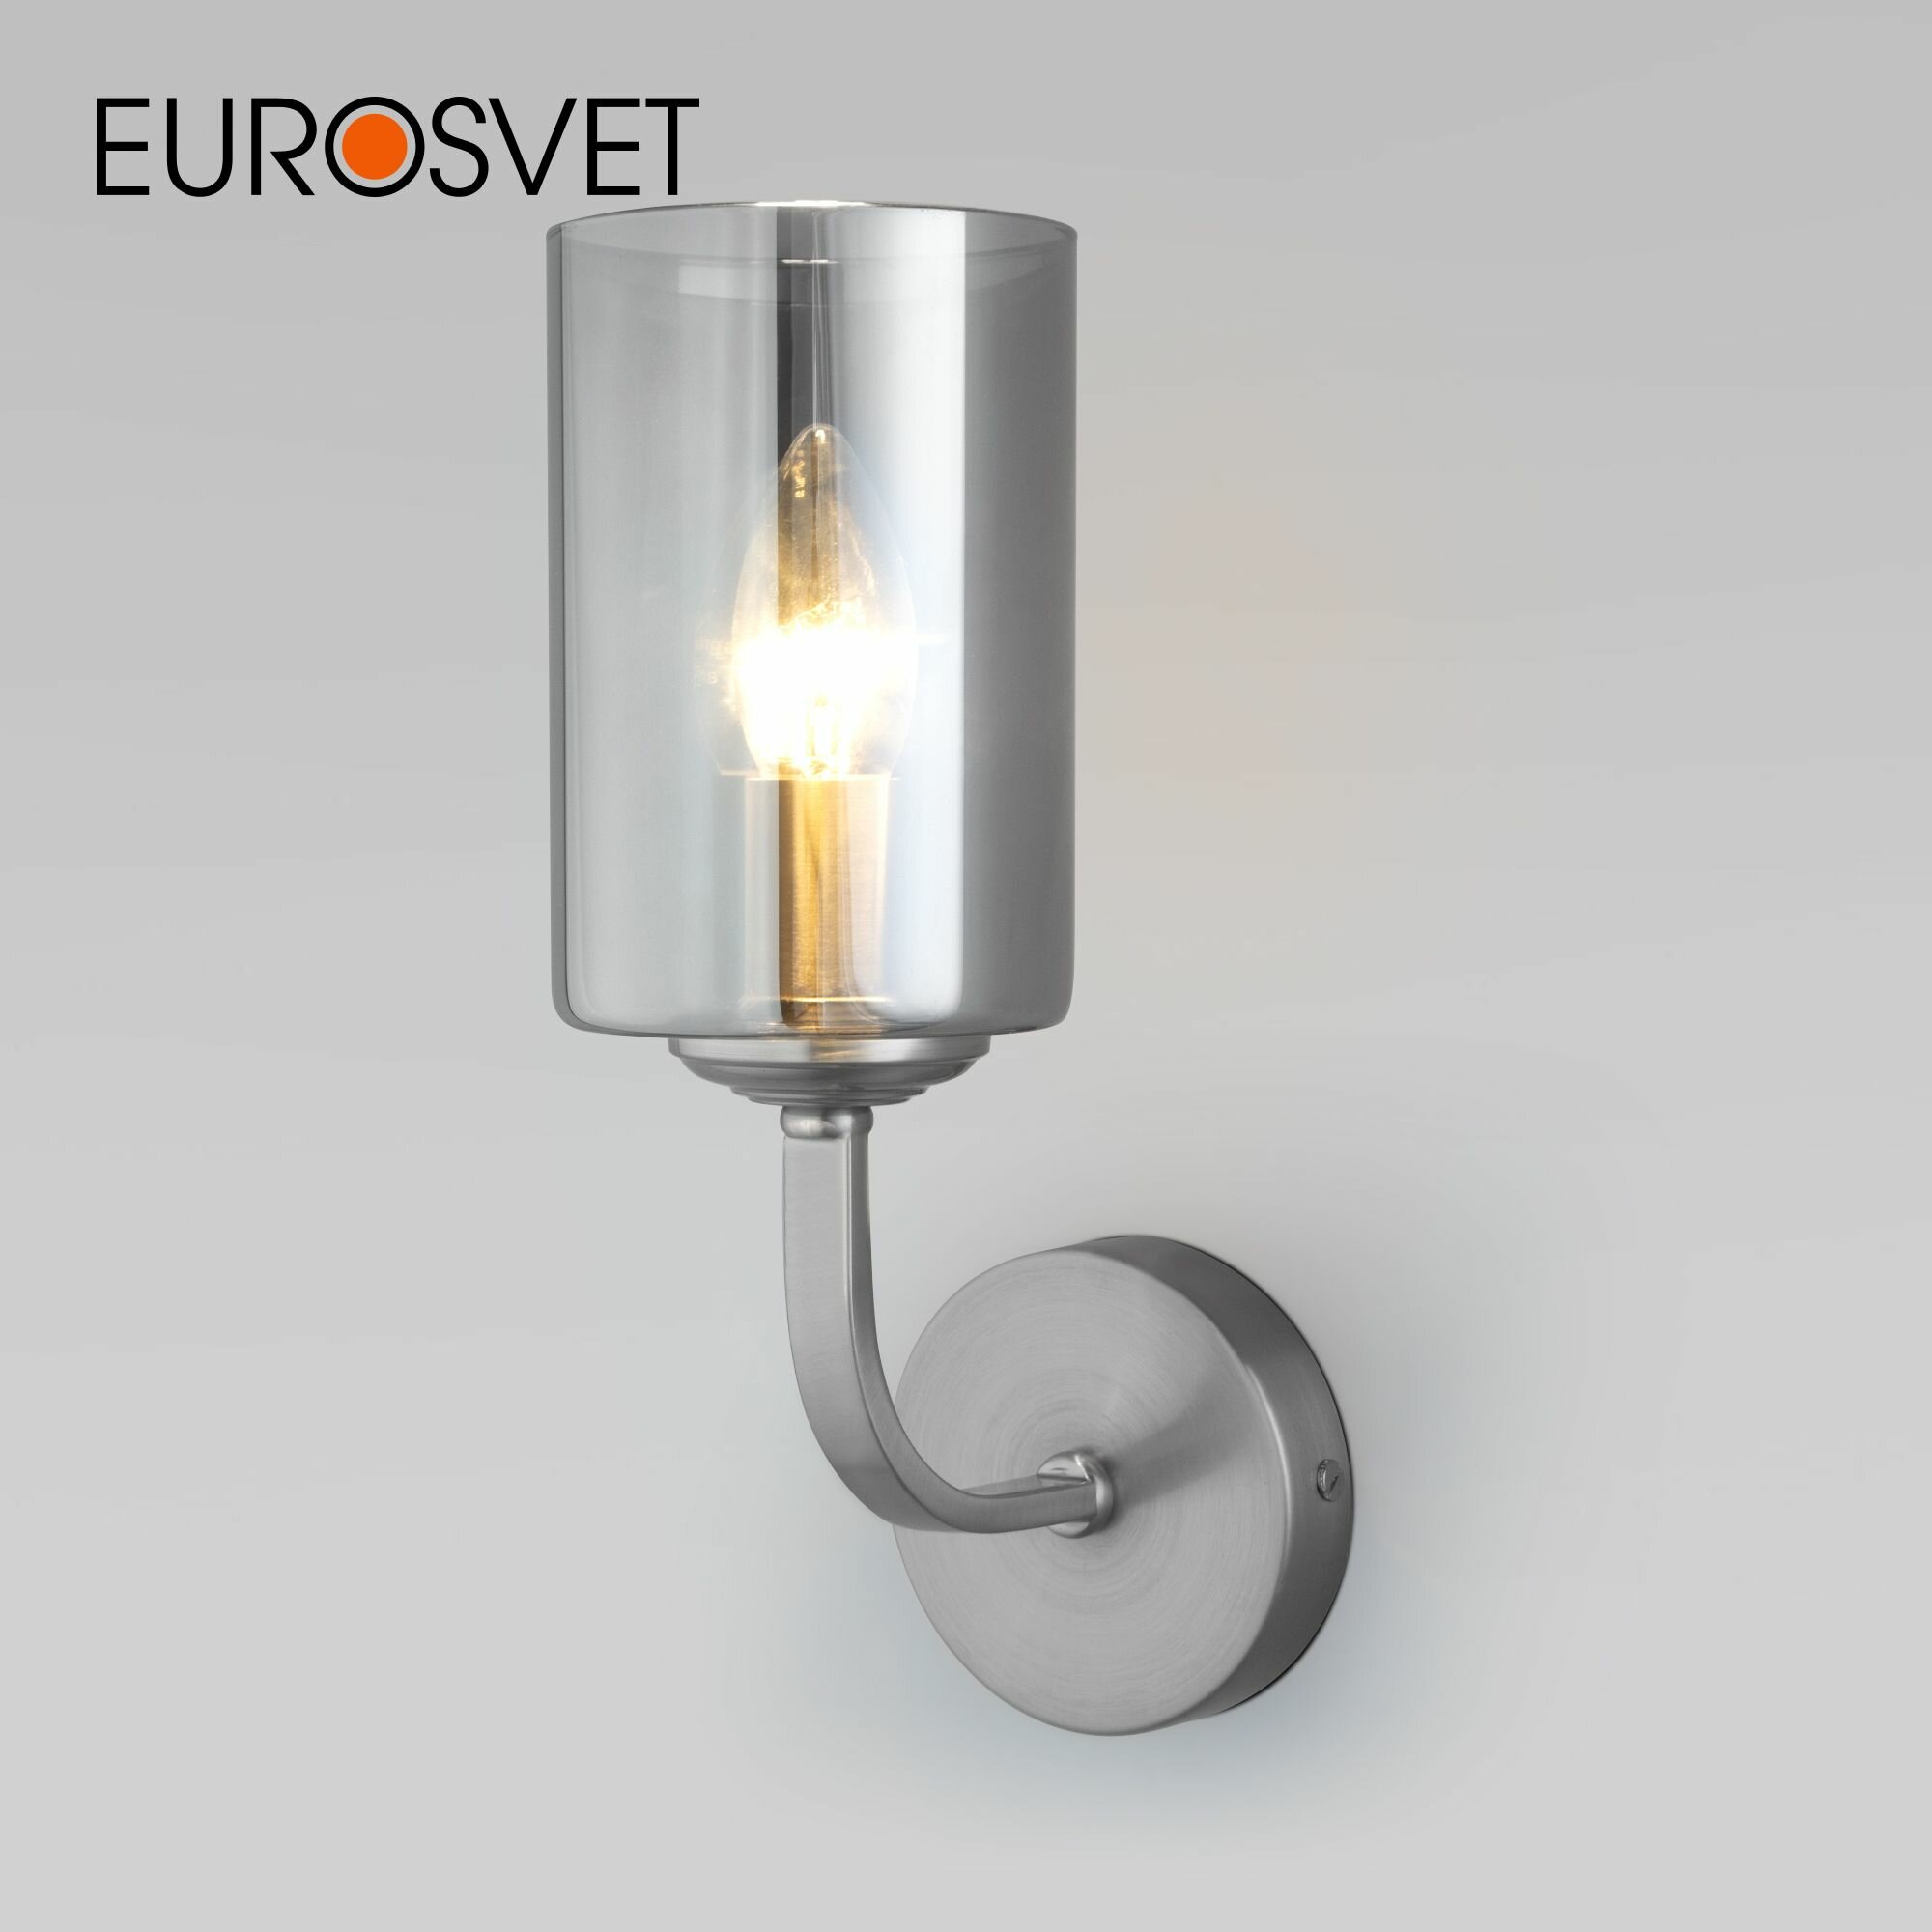 Бра / Настенный светильник Eurosvet Defi 60138/1 цвет сатин-никель